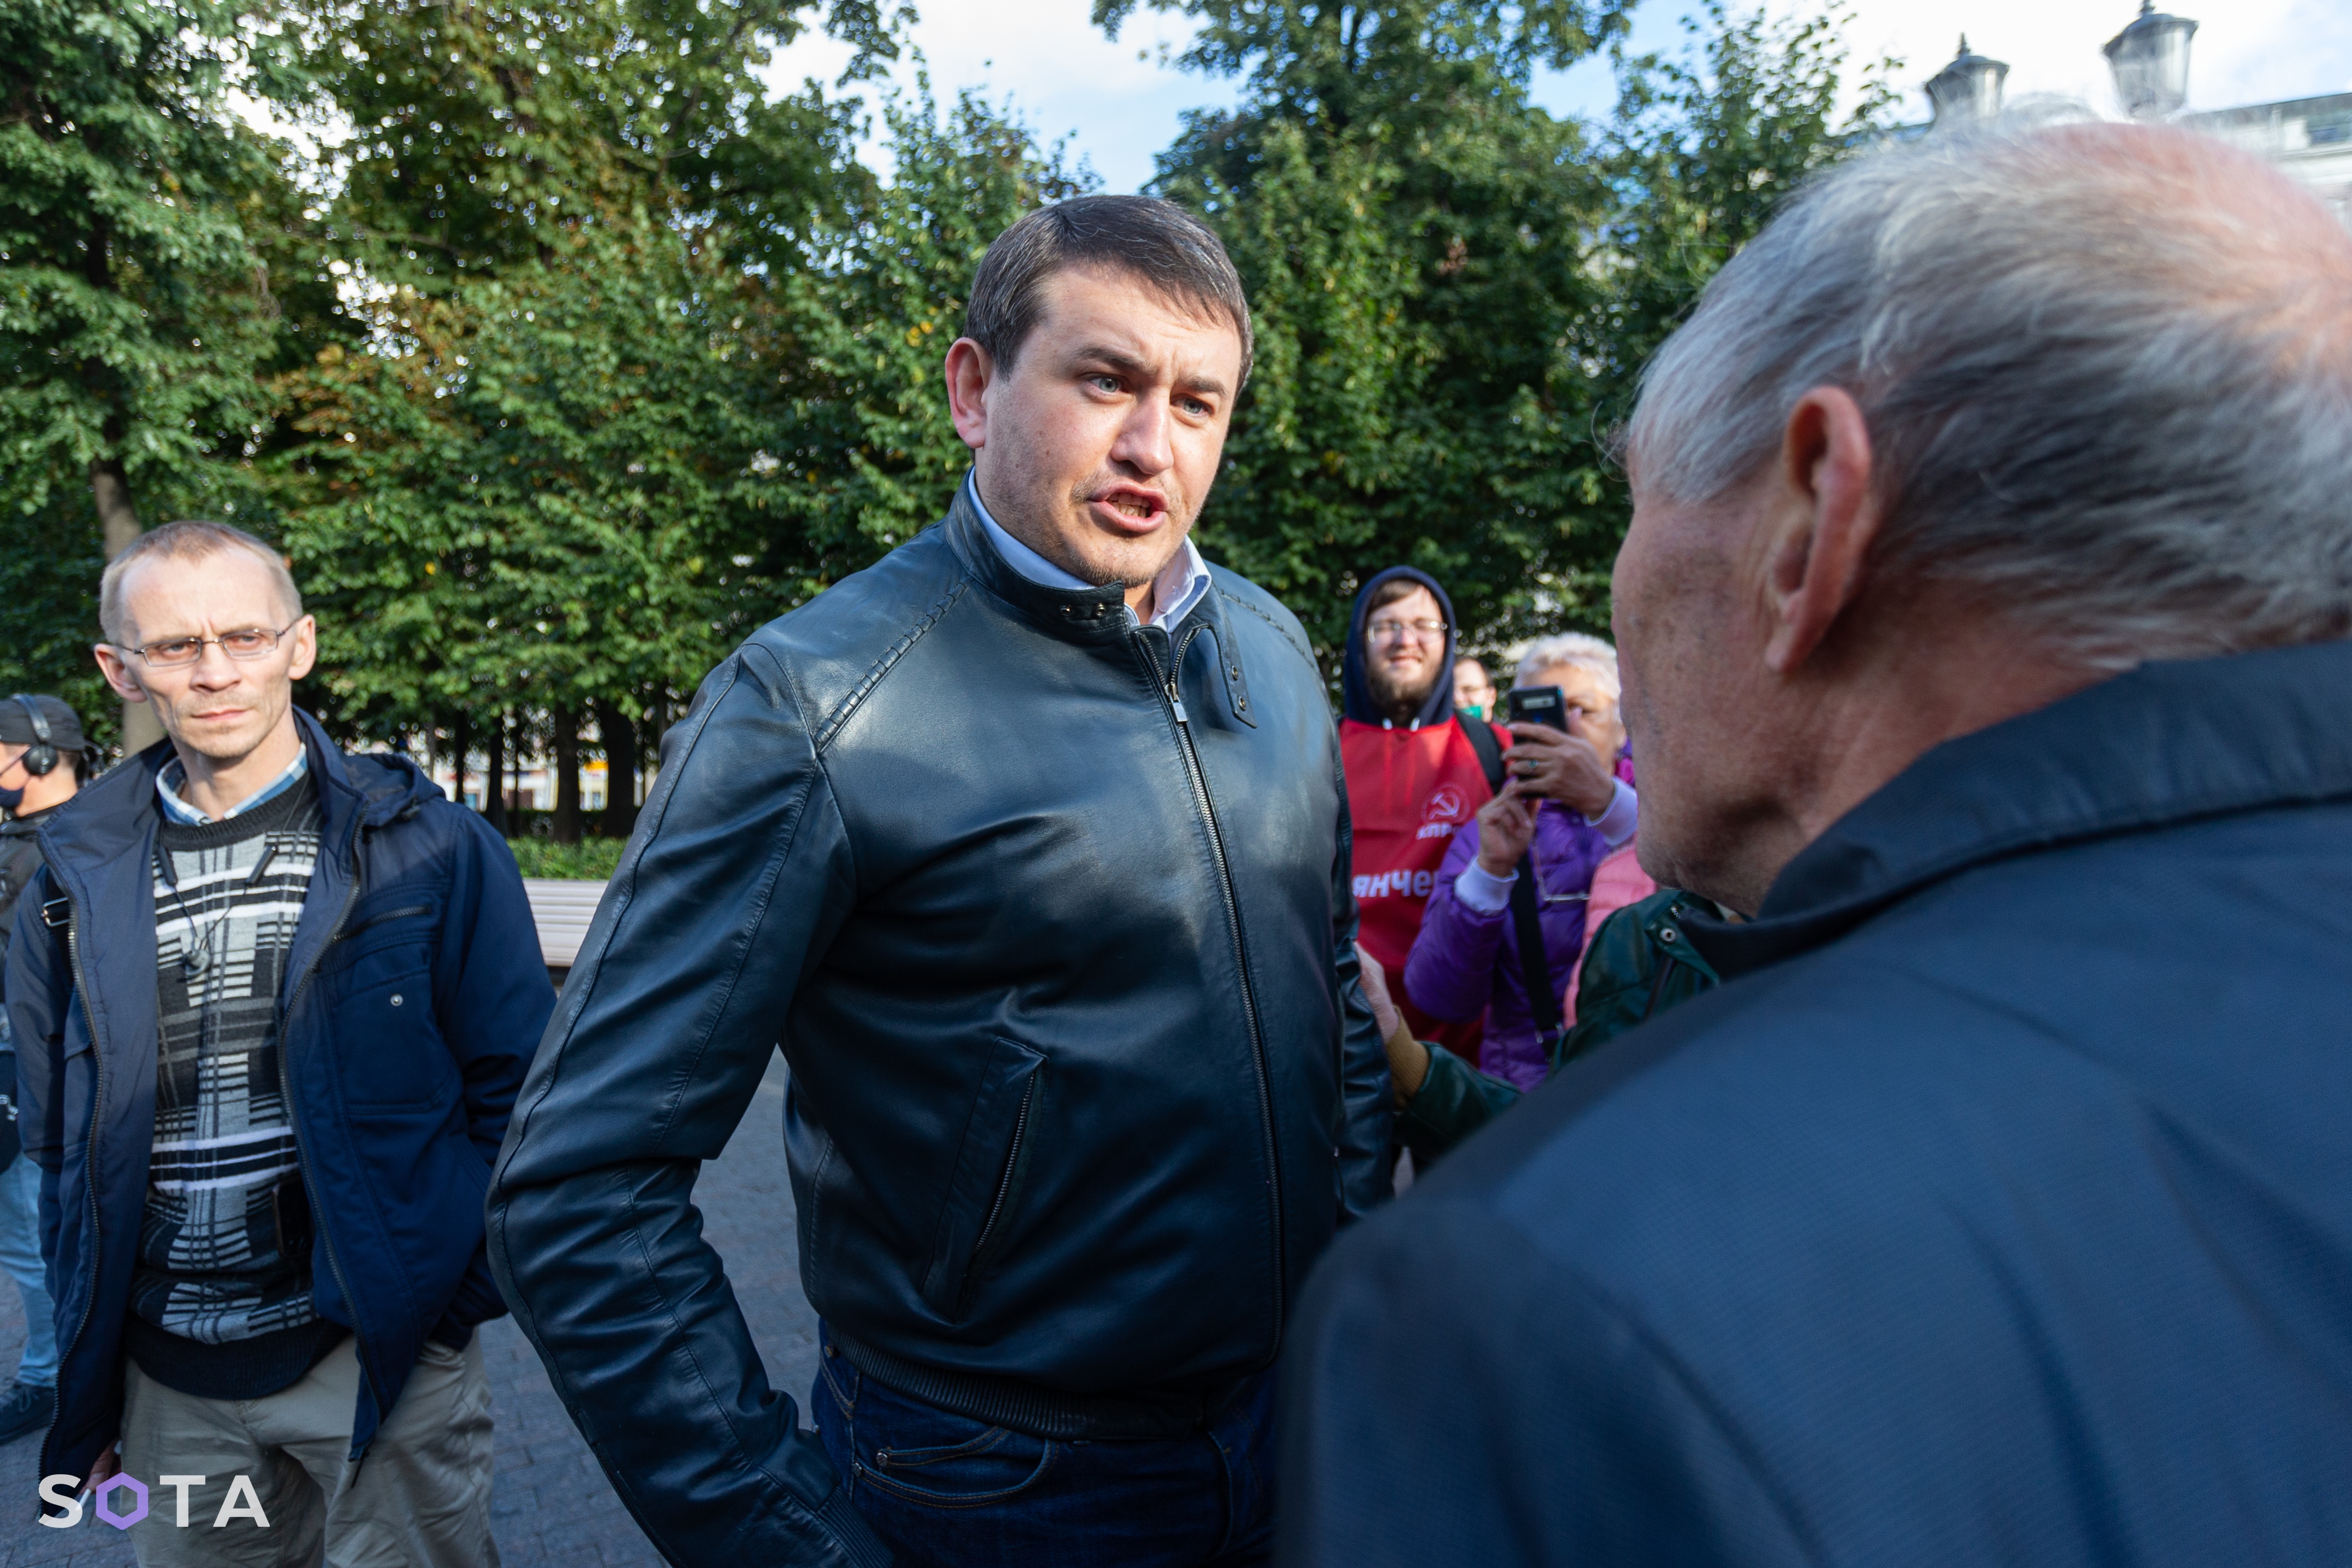 Виталий Бородин на предвыборном митинге Валерия Рашкина провоцирует участников на конфликт.
Руслан Терехов / SOTA